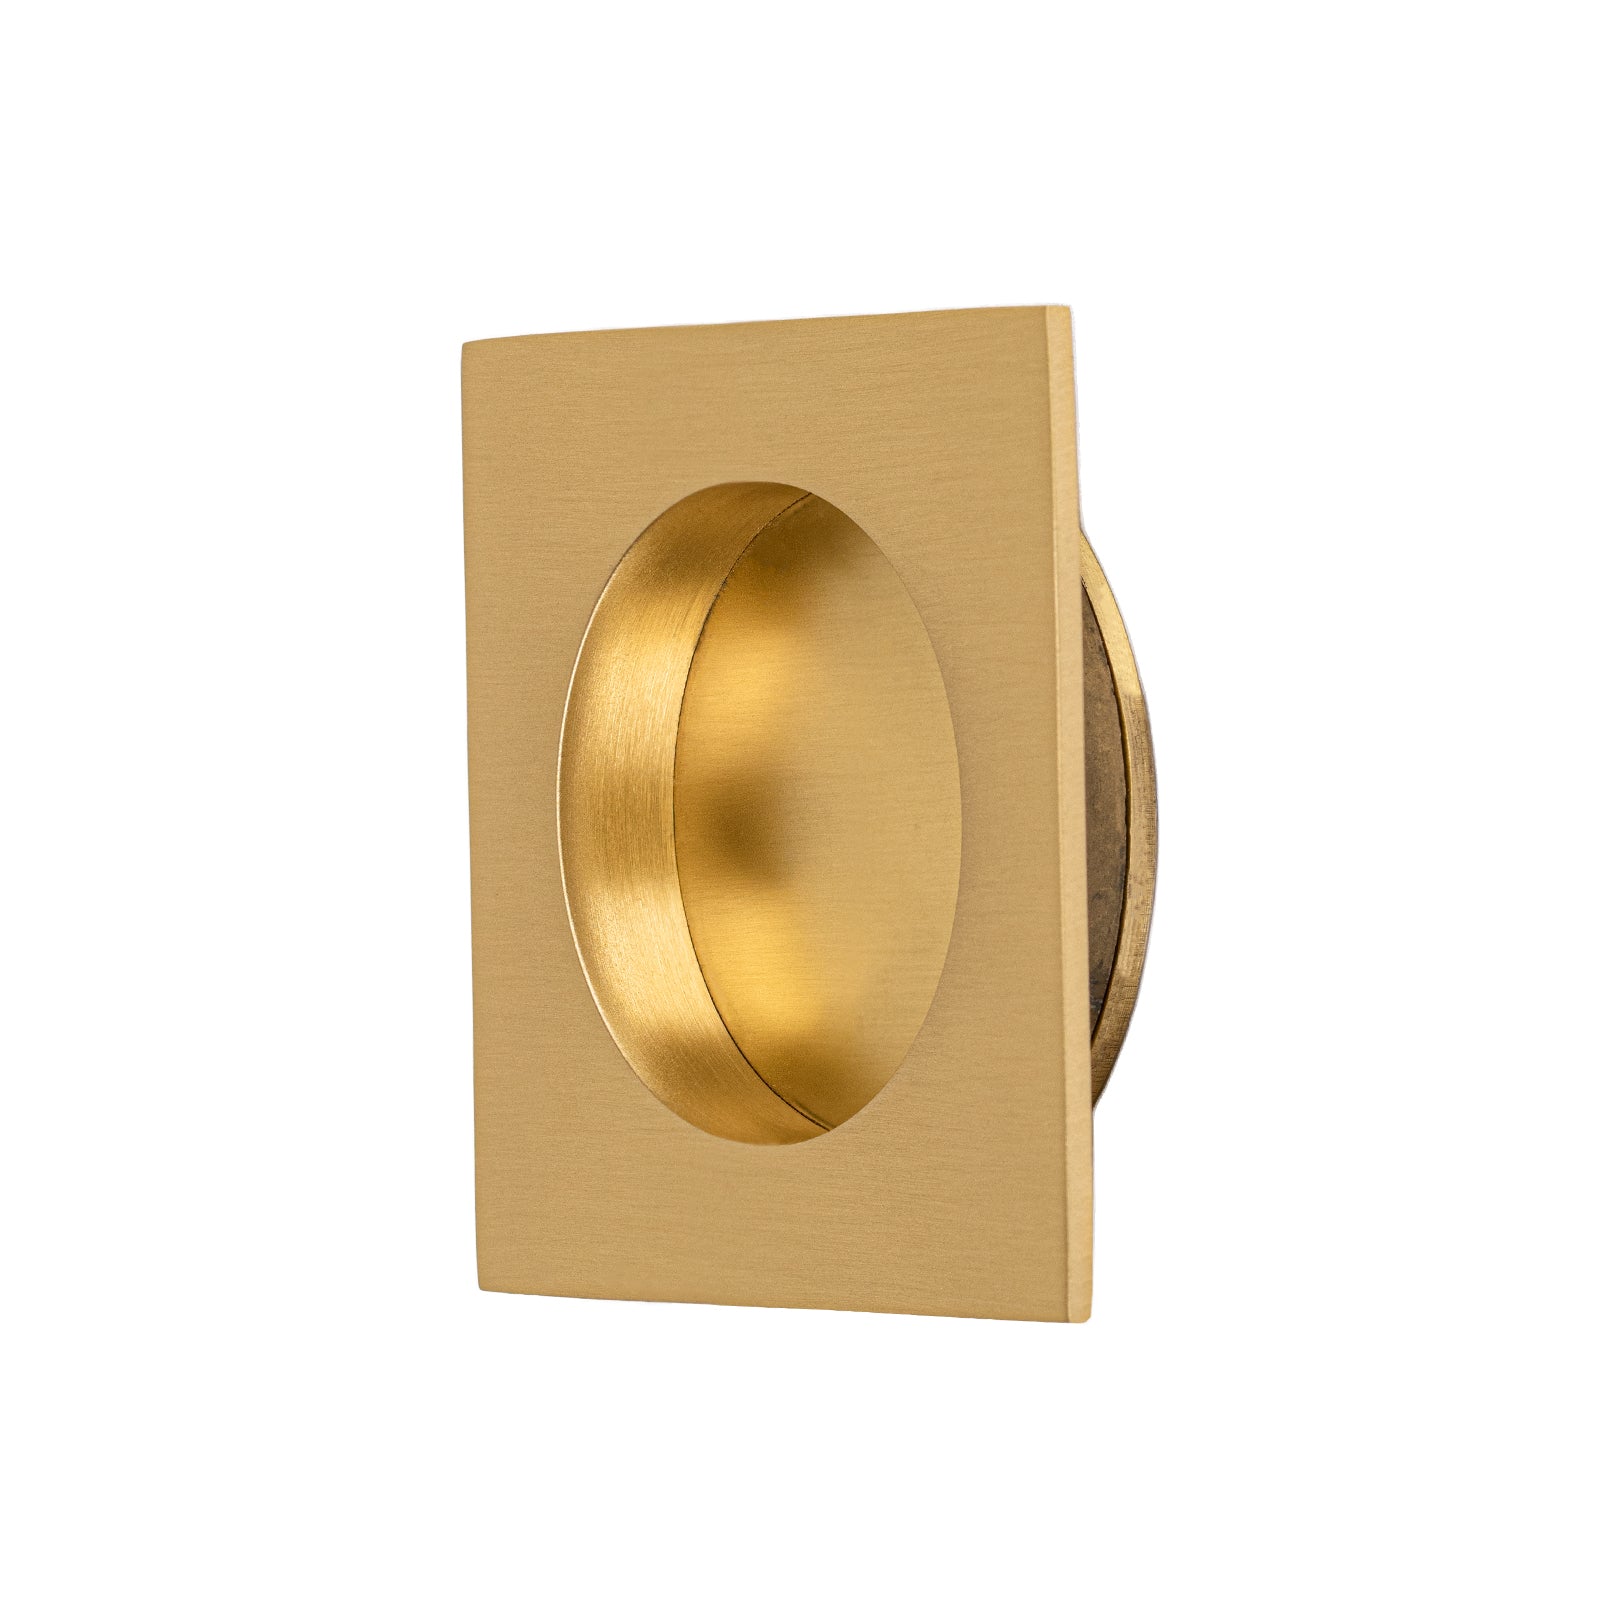 satin brass square pocket door handle SHOW